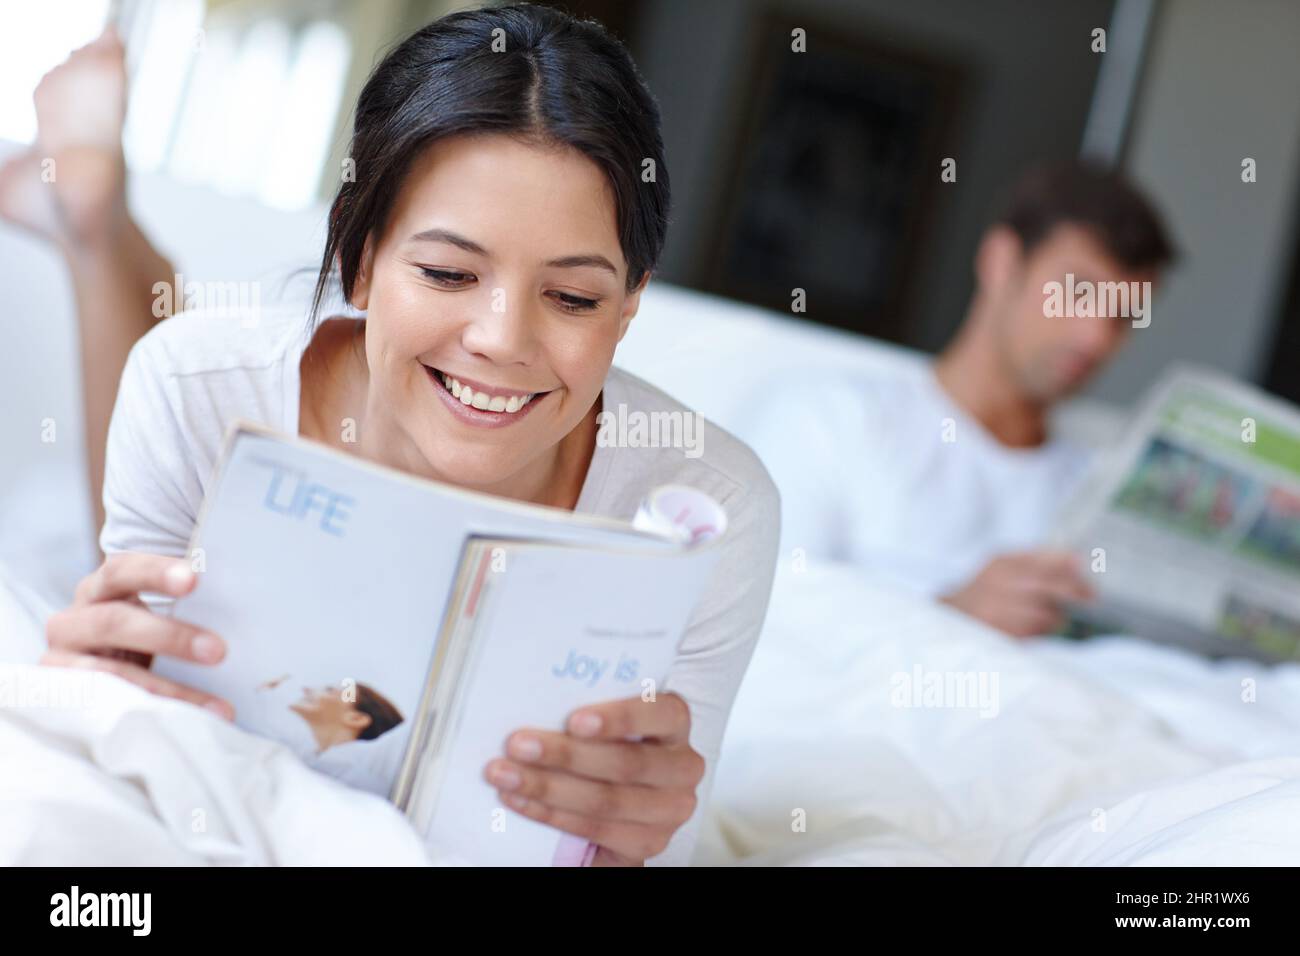 Je mehr Sie lesen, desto mehr wissen Sie. Aufnahme einer schönen Frau, die im Bett liegt und eine Zeitschrift liest. Stockfoto